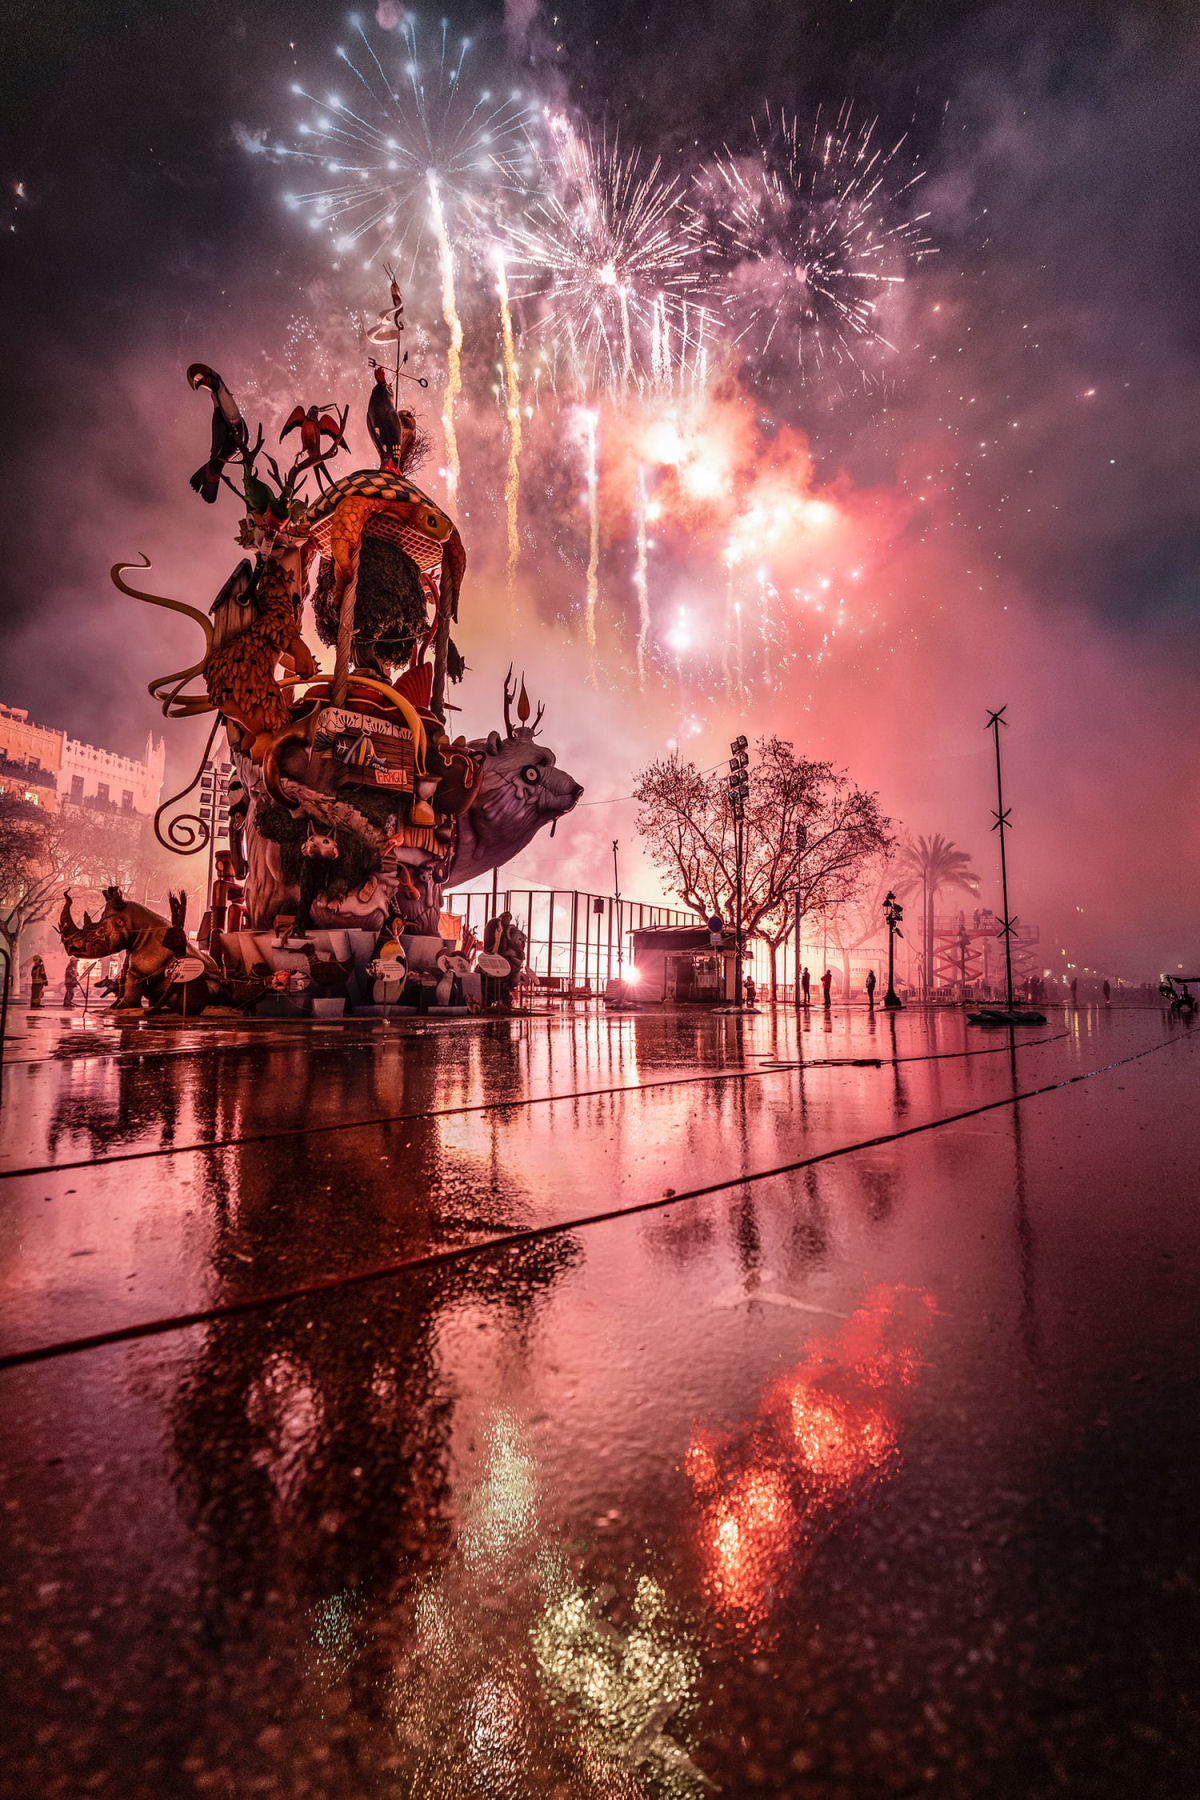 Esculturas de vida selvagem surreais queimam no festival anual em Valência, Espanha 04